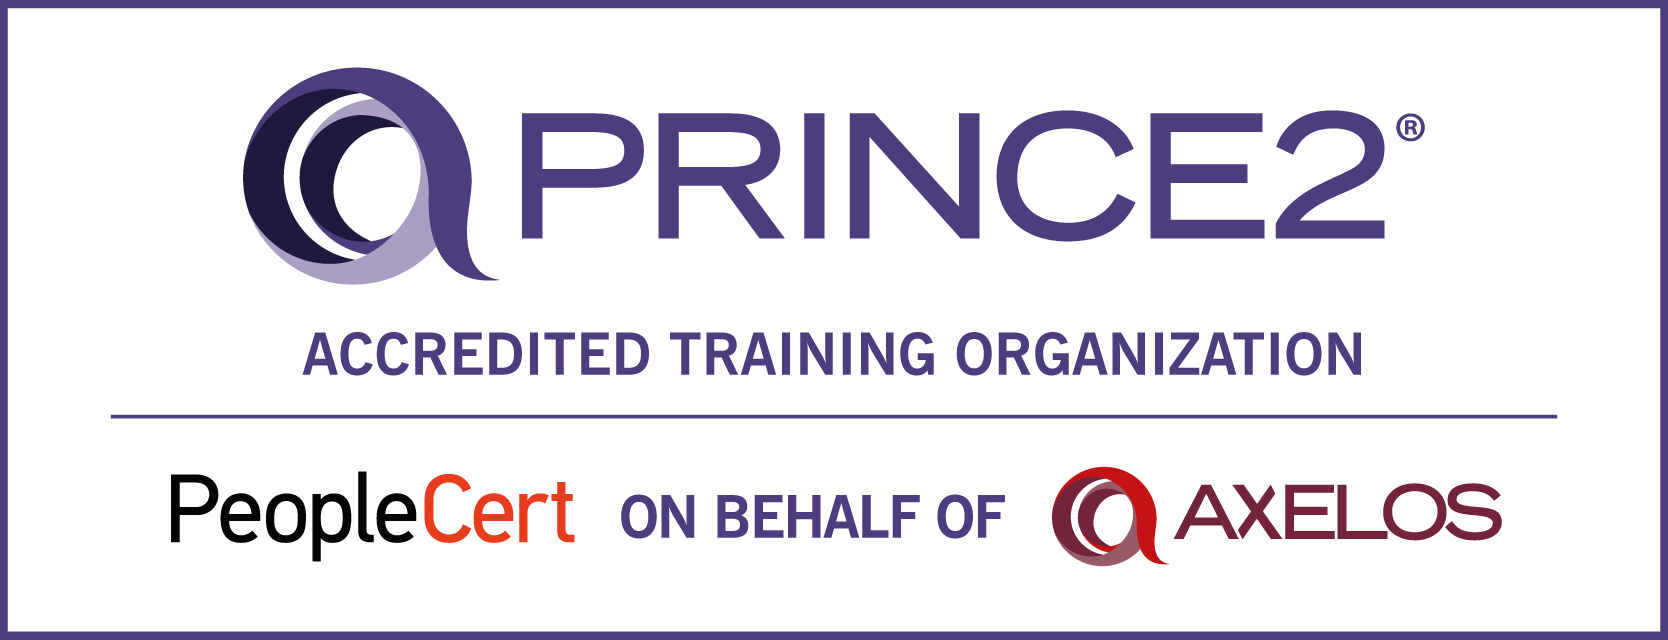 PRINCE2_ATO-logo2